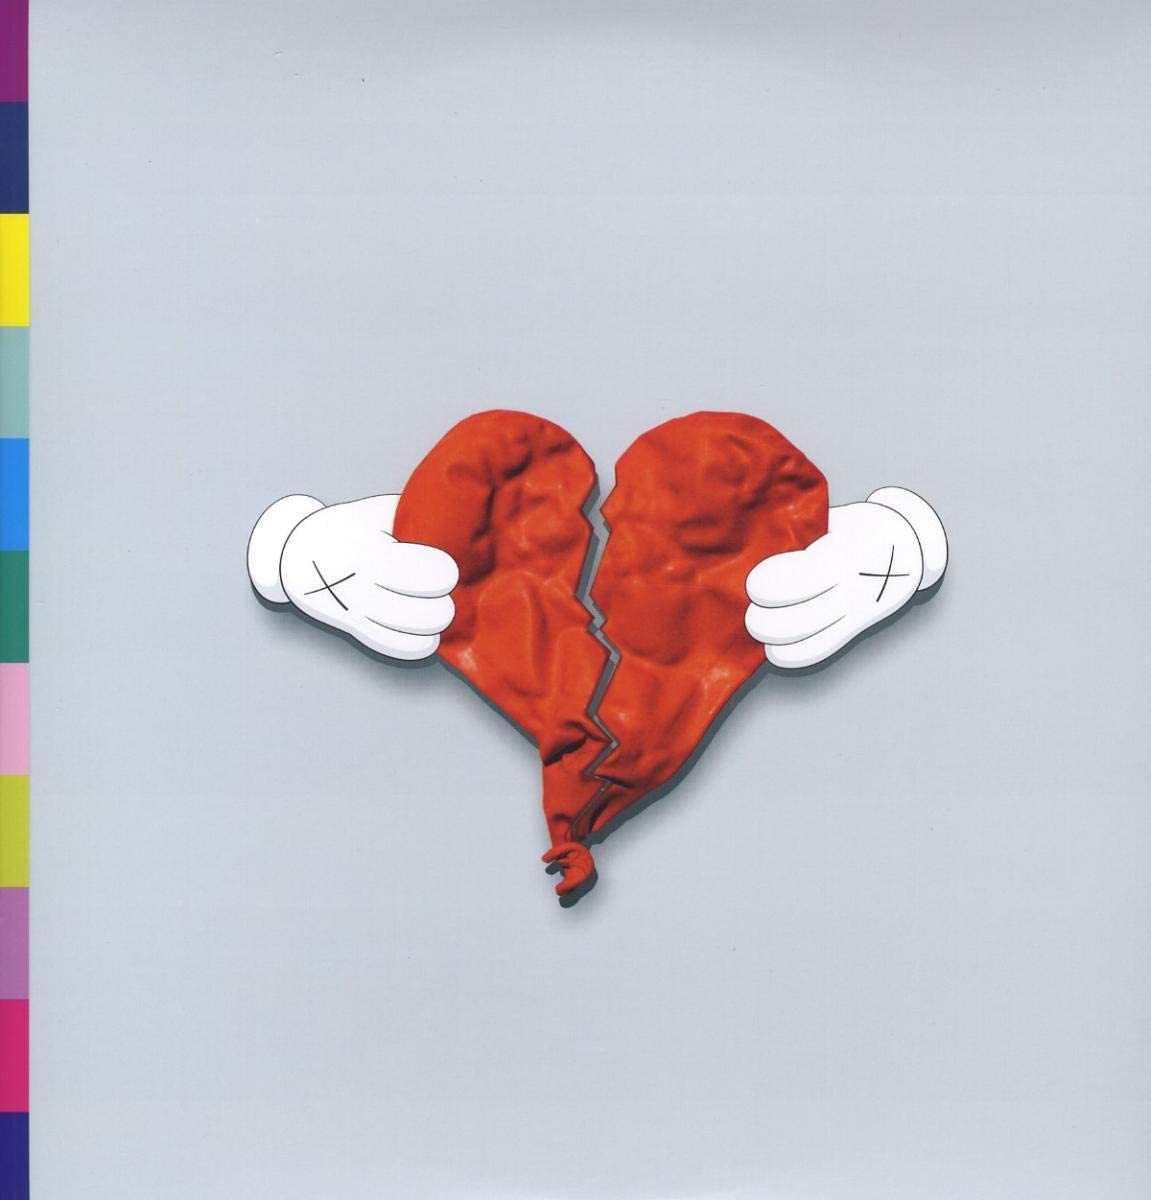 Kanye West - 808s & Heartbreak (Deluxe Version)